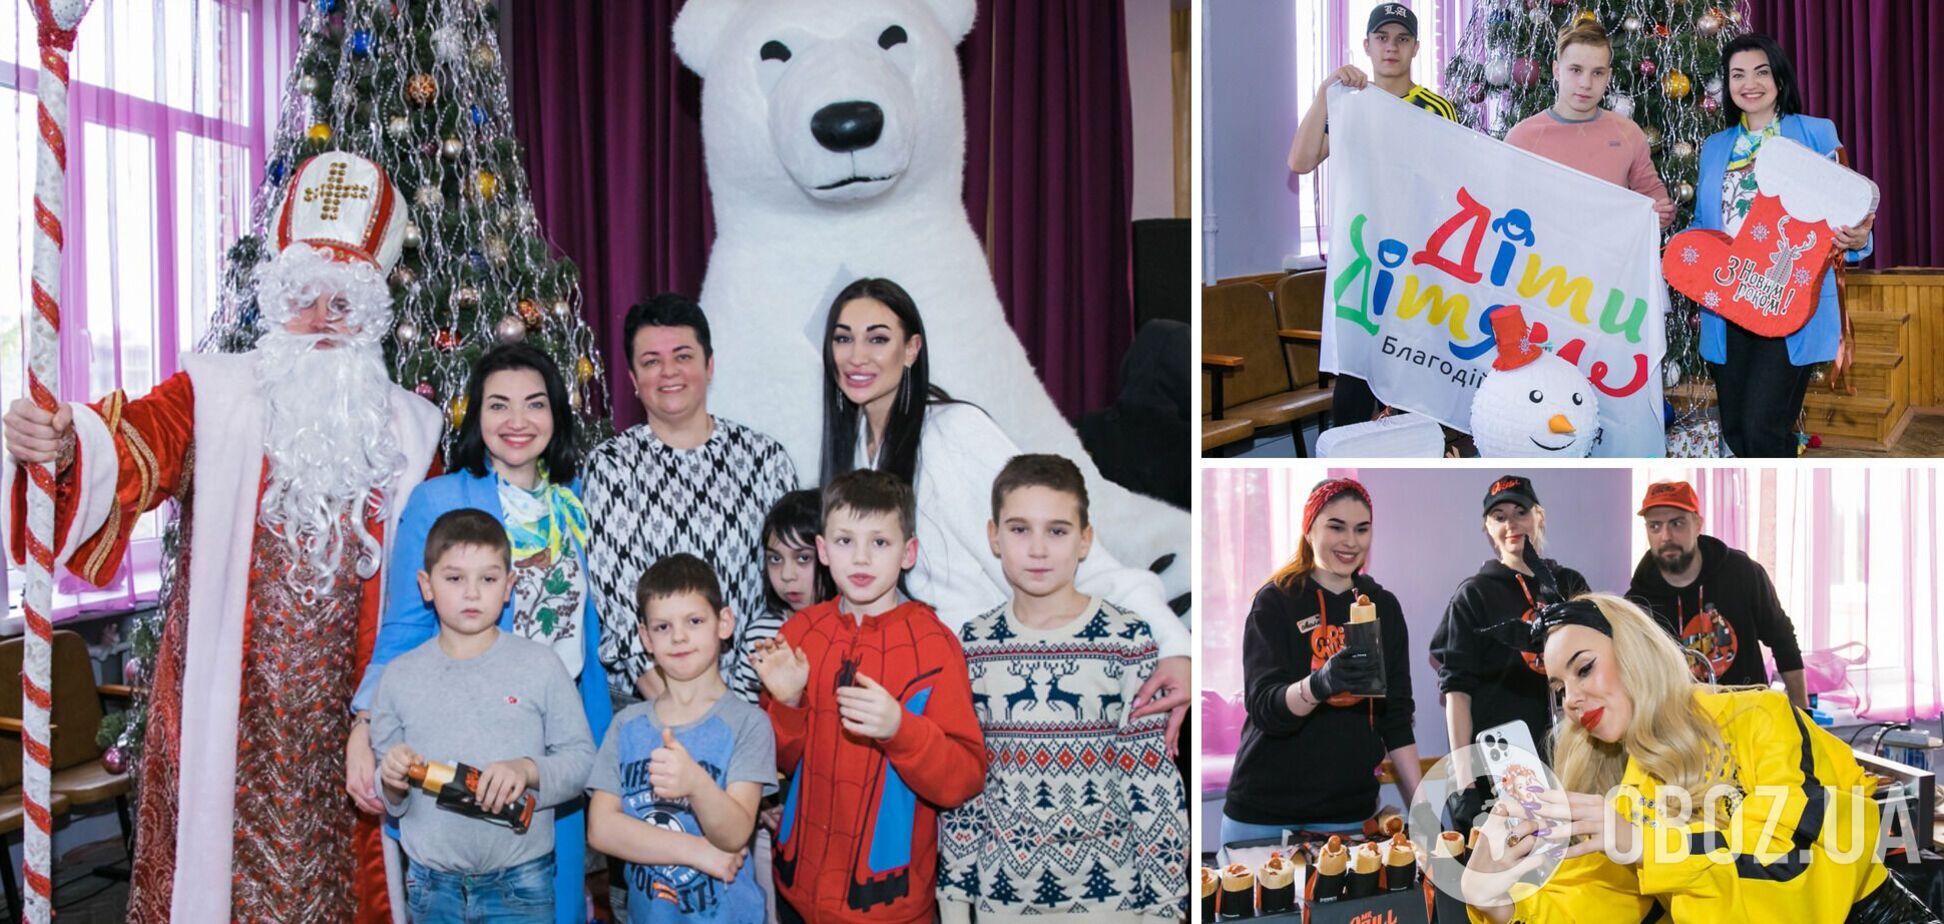 БФ 'Діти Дітям' та ГО 'Лікарський фронт' влаштували дітям-сиротам новорічне свято із зірками